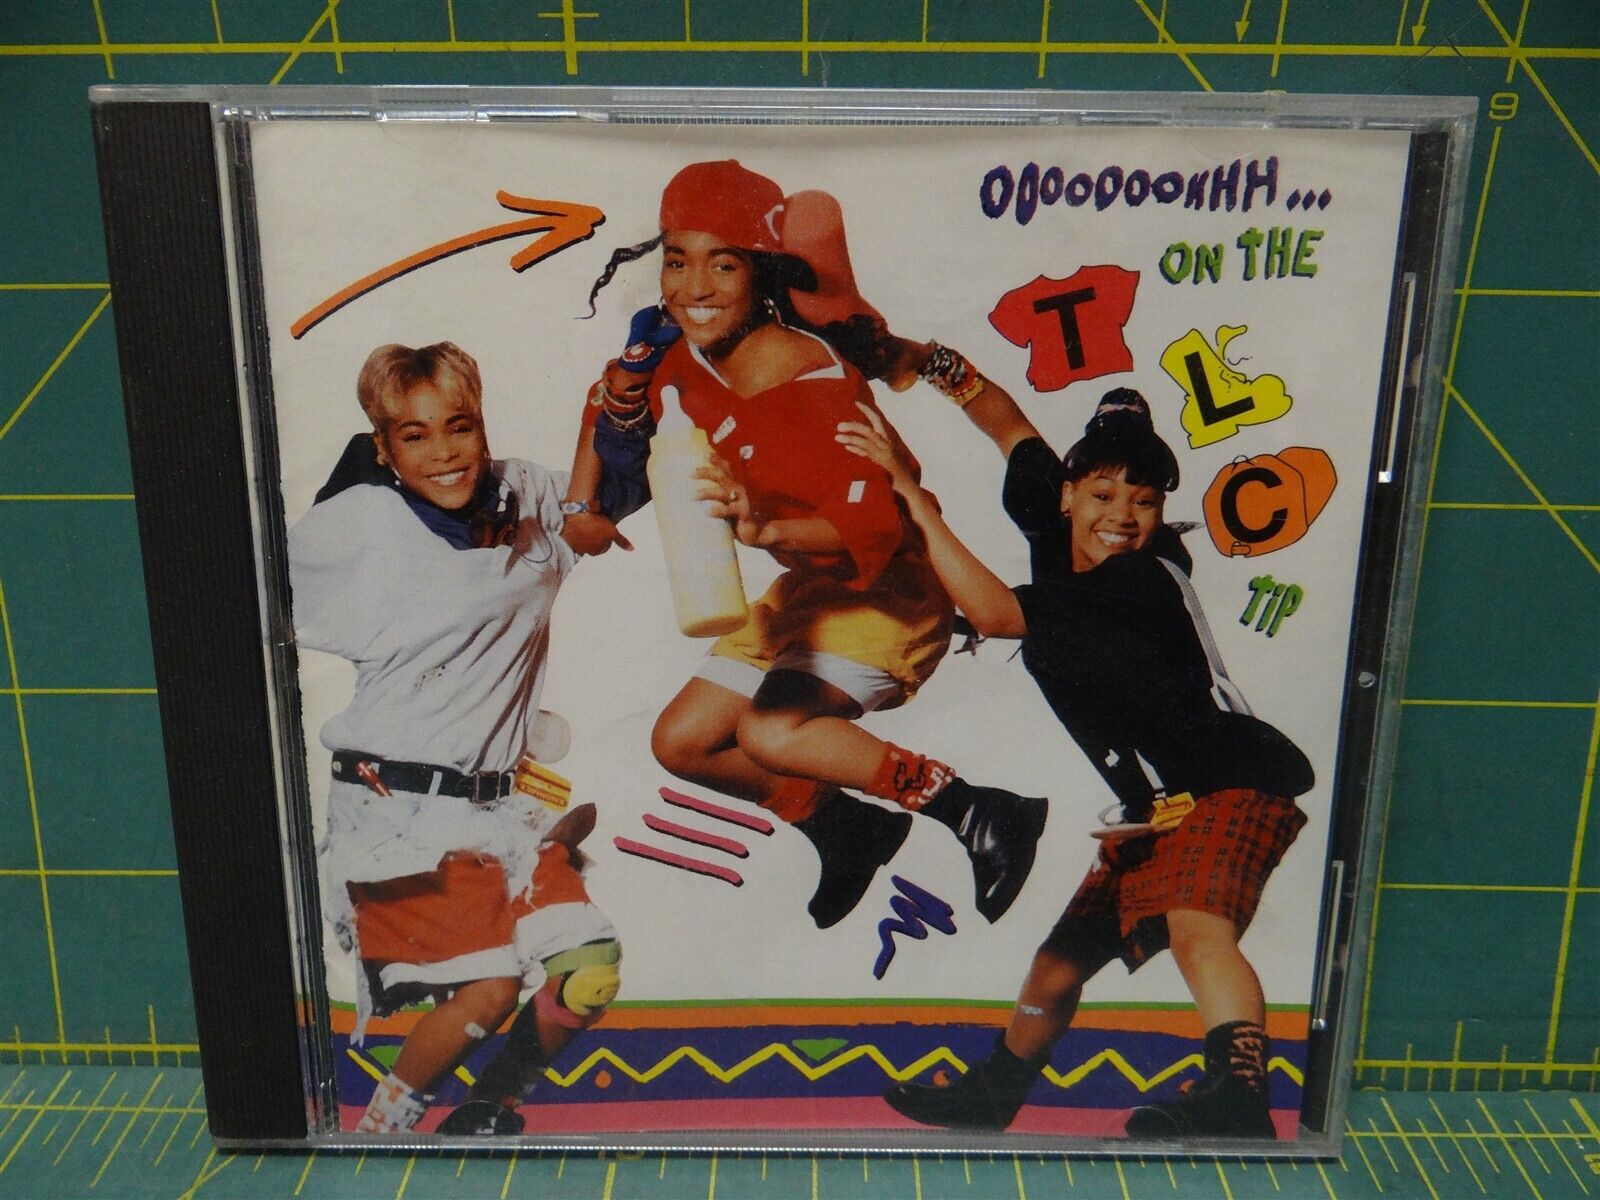 TLC – Ooooooohhh...On The TLC Tip 1992 CD LaFace Records 73008-26003-2 Funk Soul